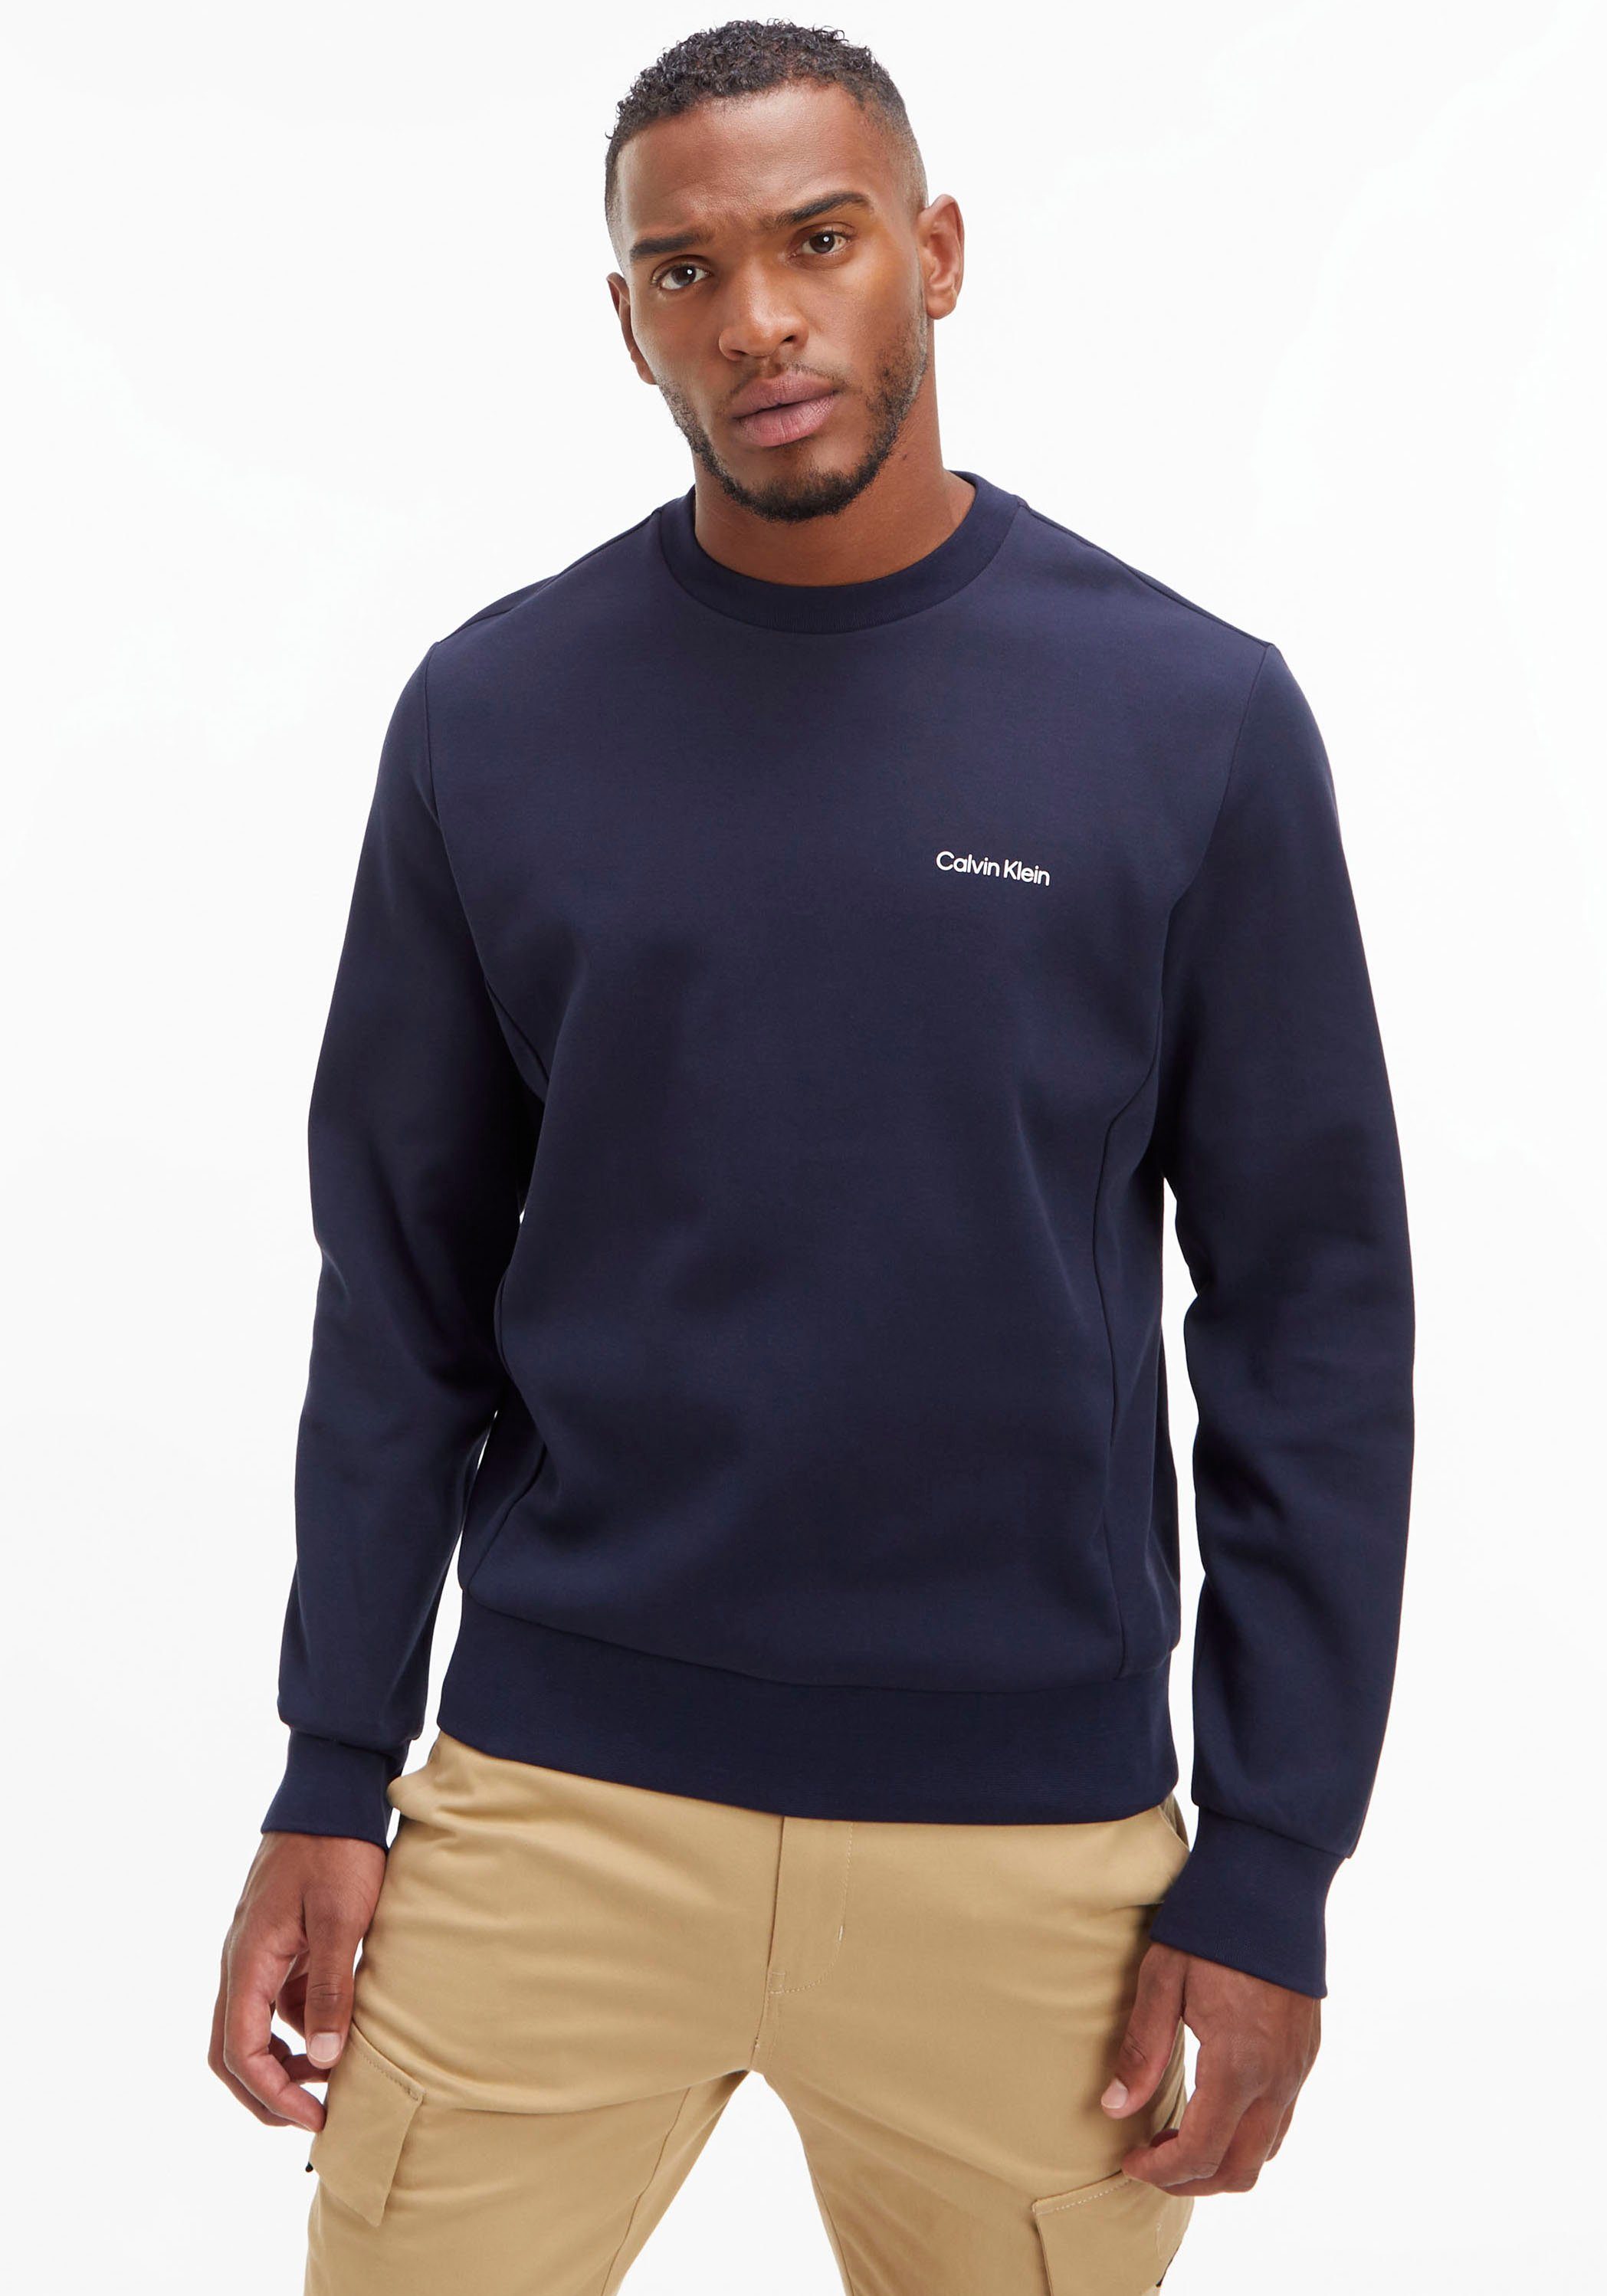 Calvin Klein Sweatshirt MICRO LOGO REPREVE SWEATSHIRT mit halsnahmen Rundhalsausschnitt marine | Sweatshirts